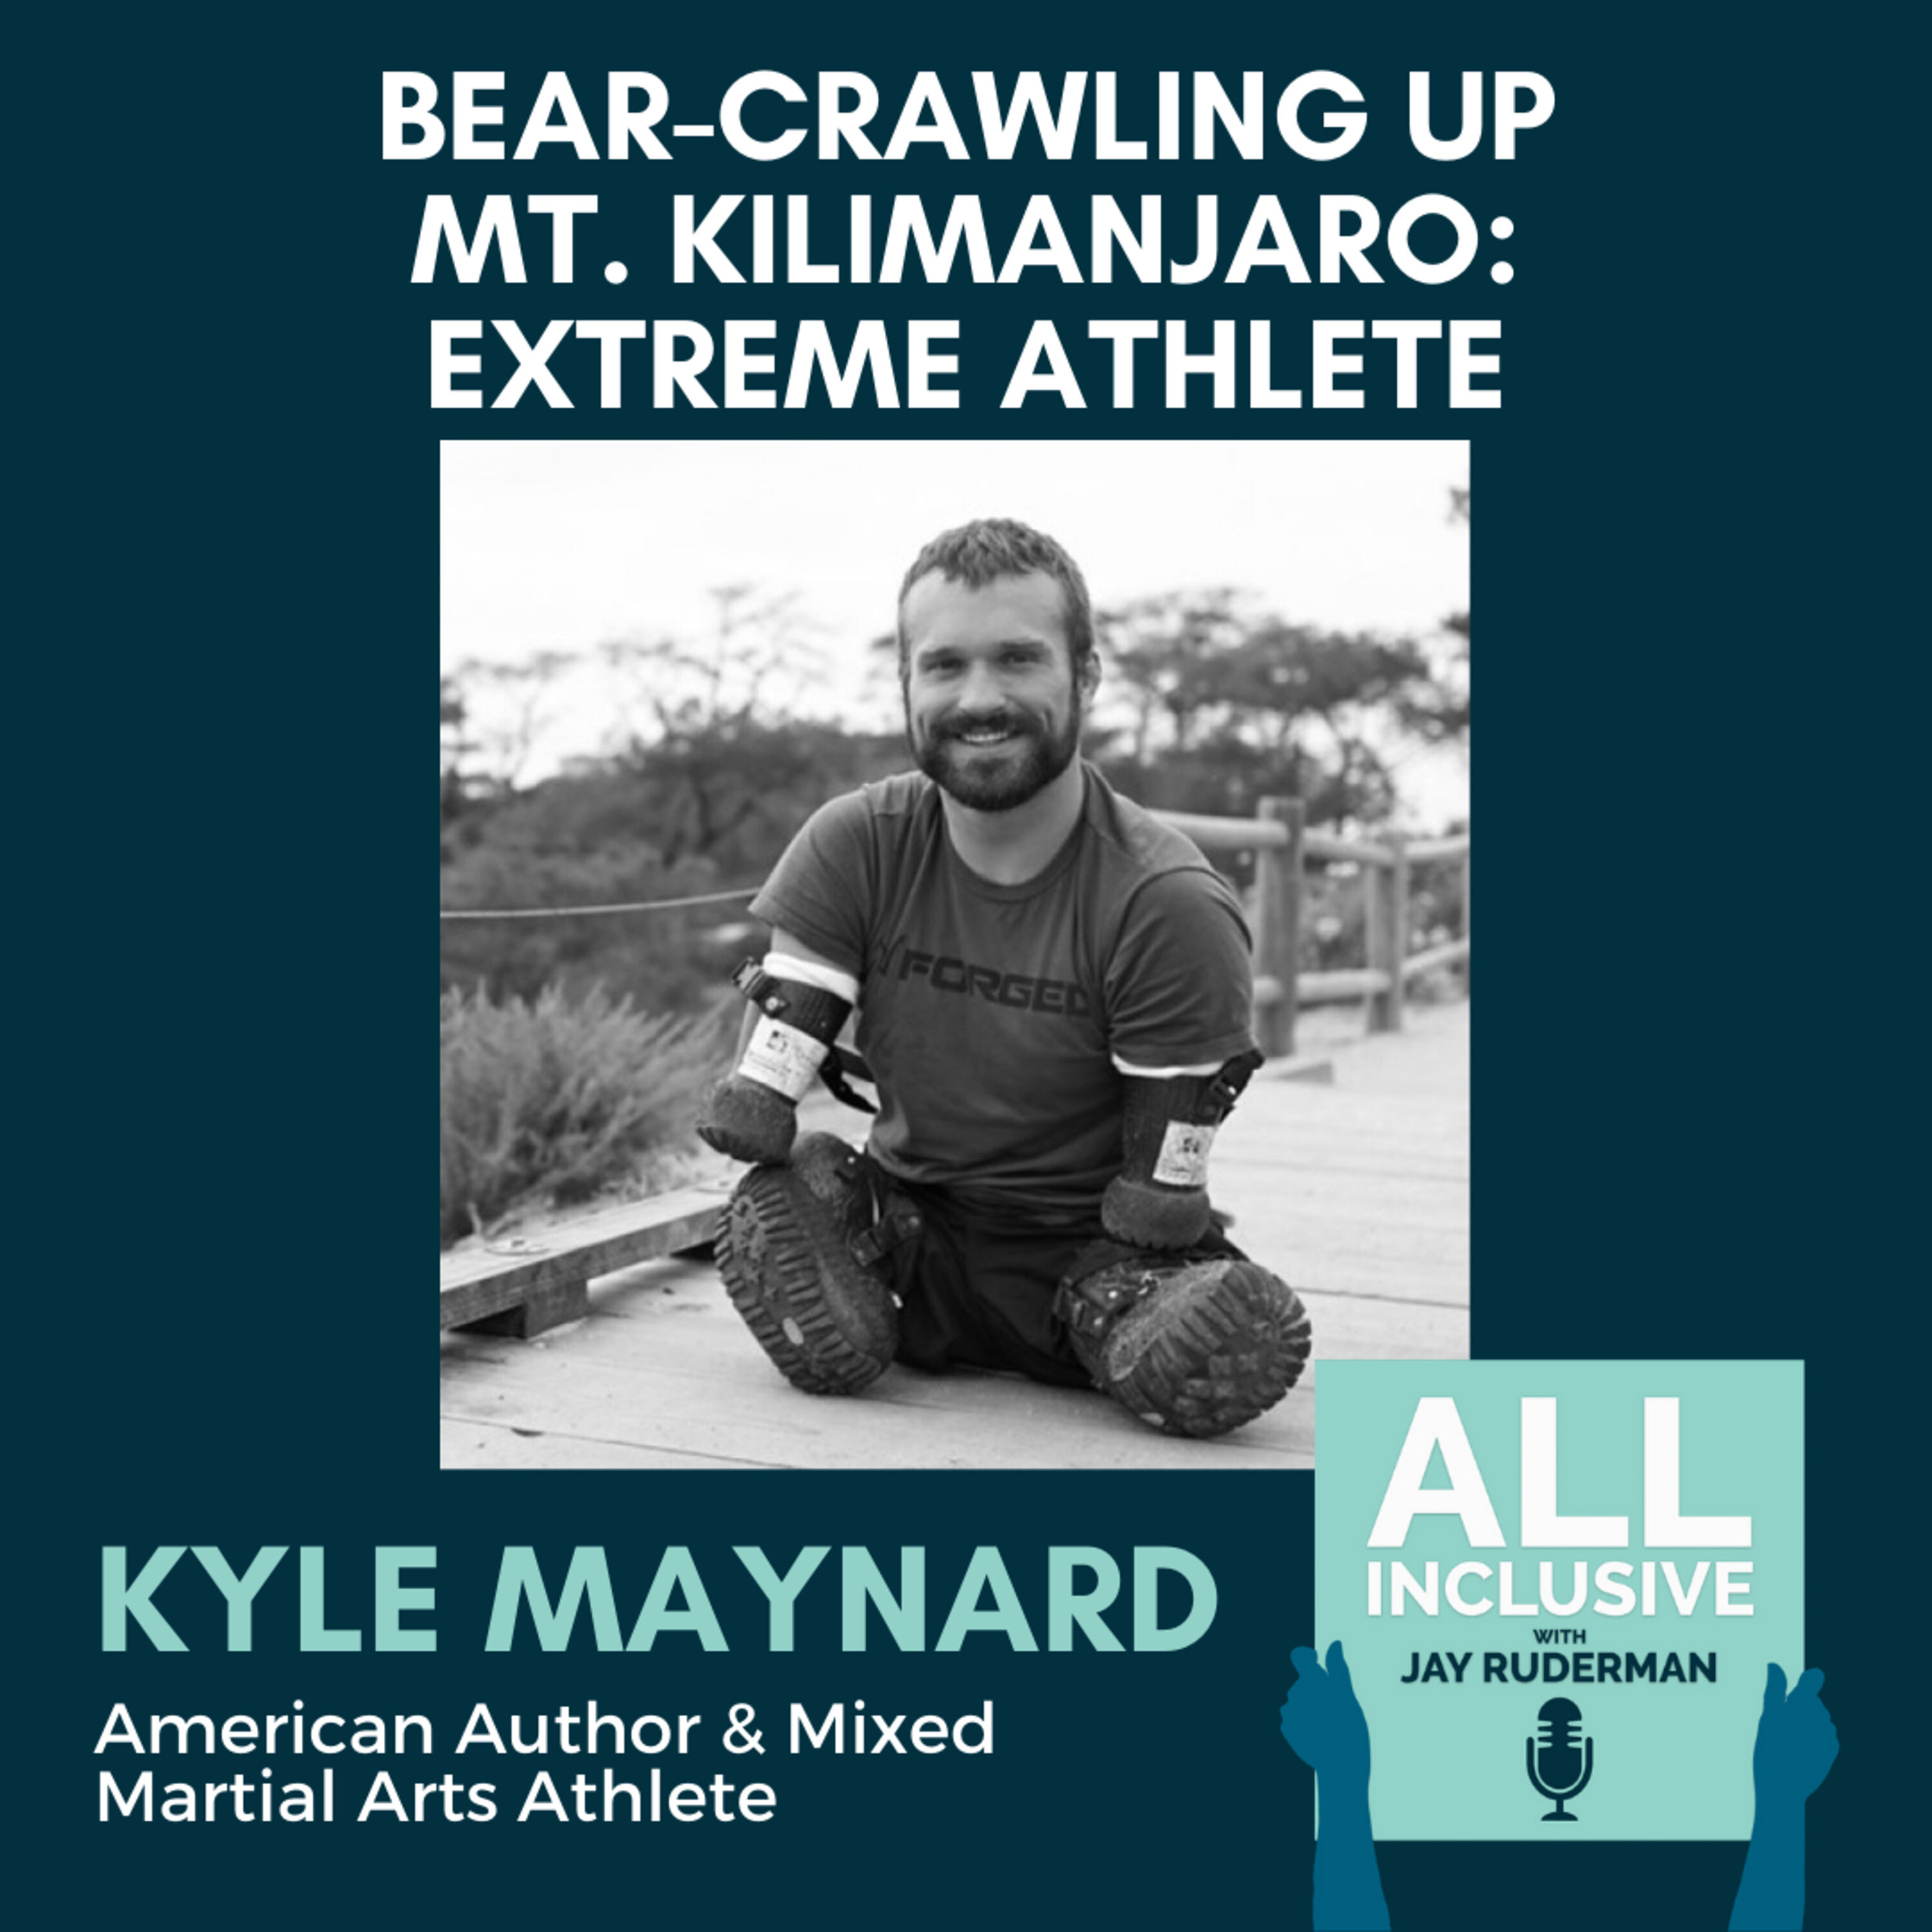 Bear-Crawling up Mt. Kilimanjaro: Extreme Athlete Kyle Maynard